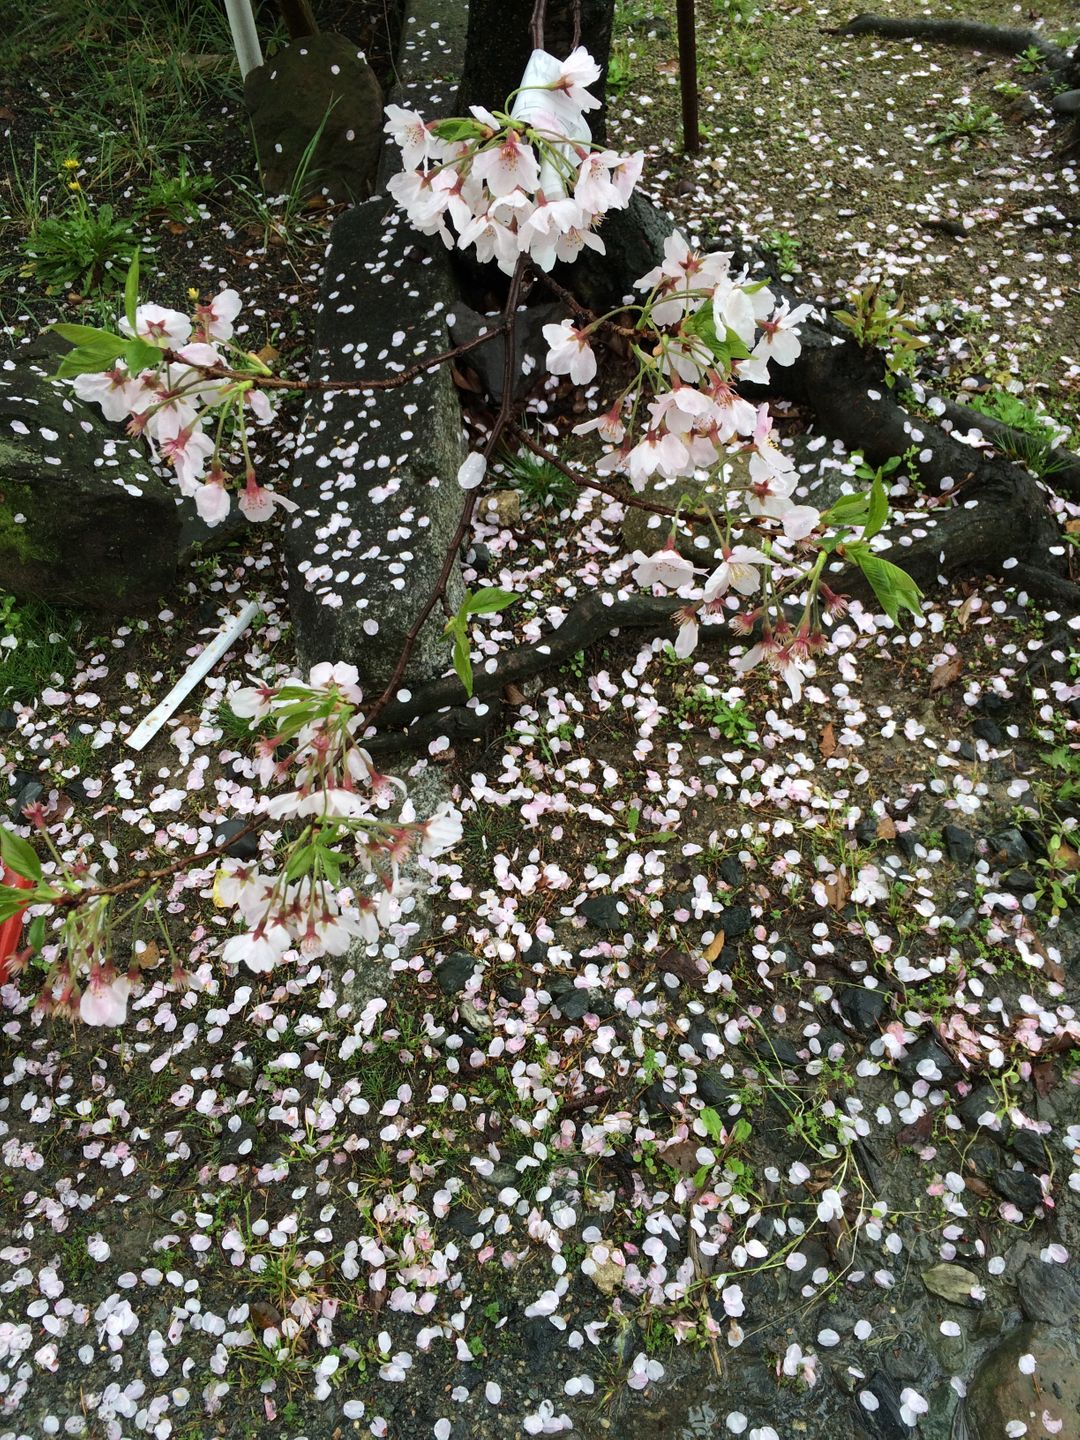 櫻花花瓣落地也很美